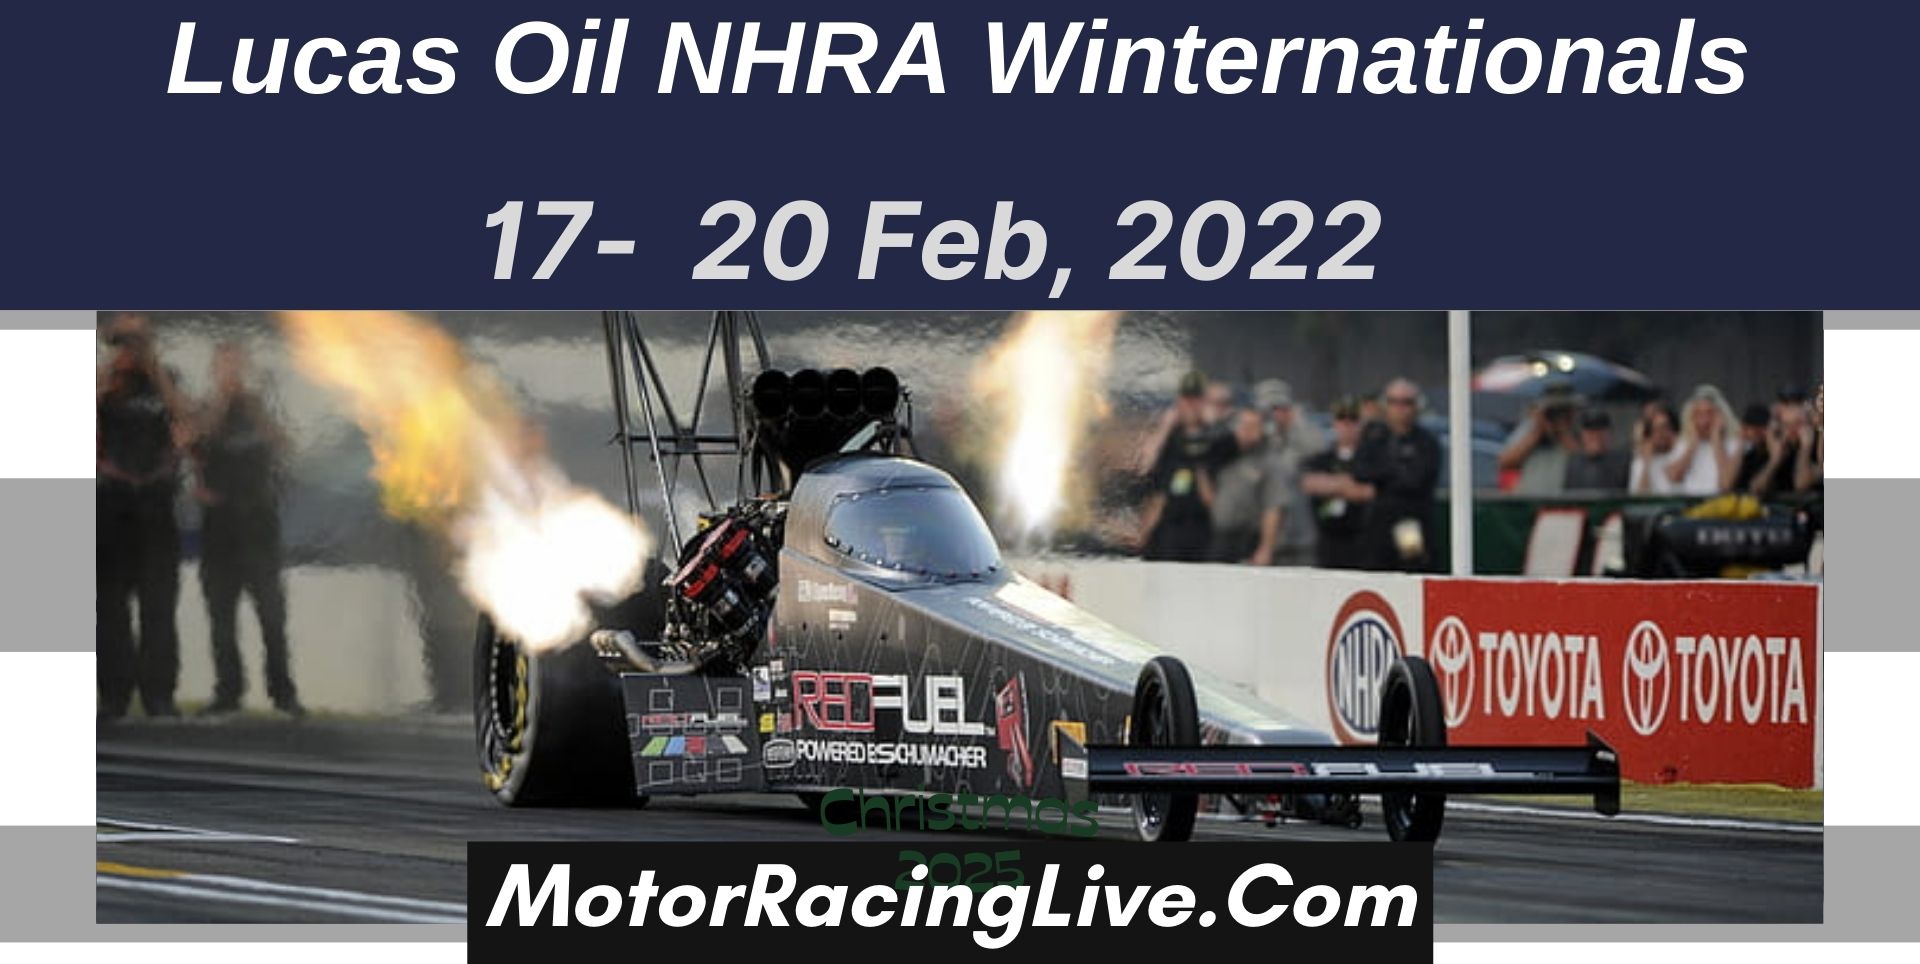 Lucas Oil NHRA Winternationals Live Online